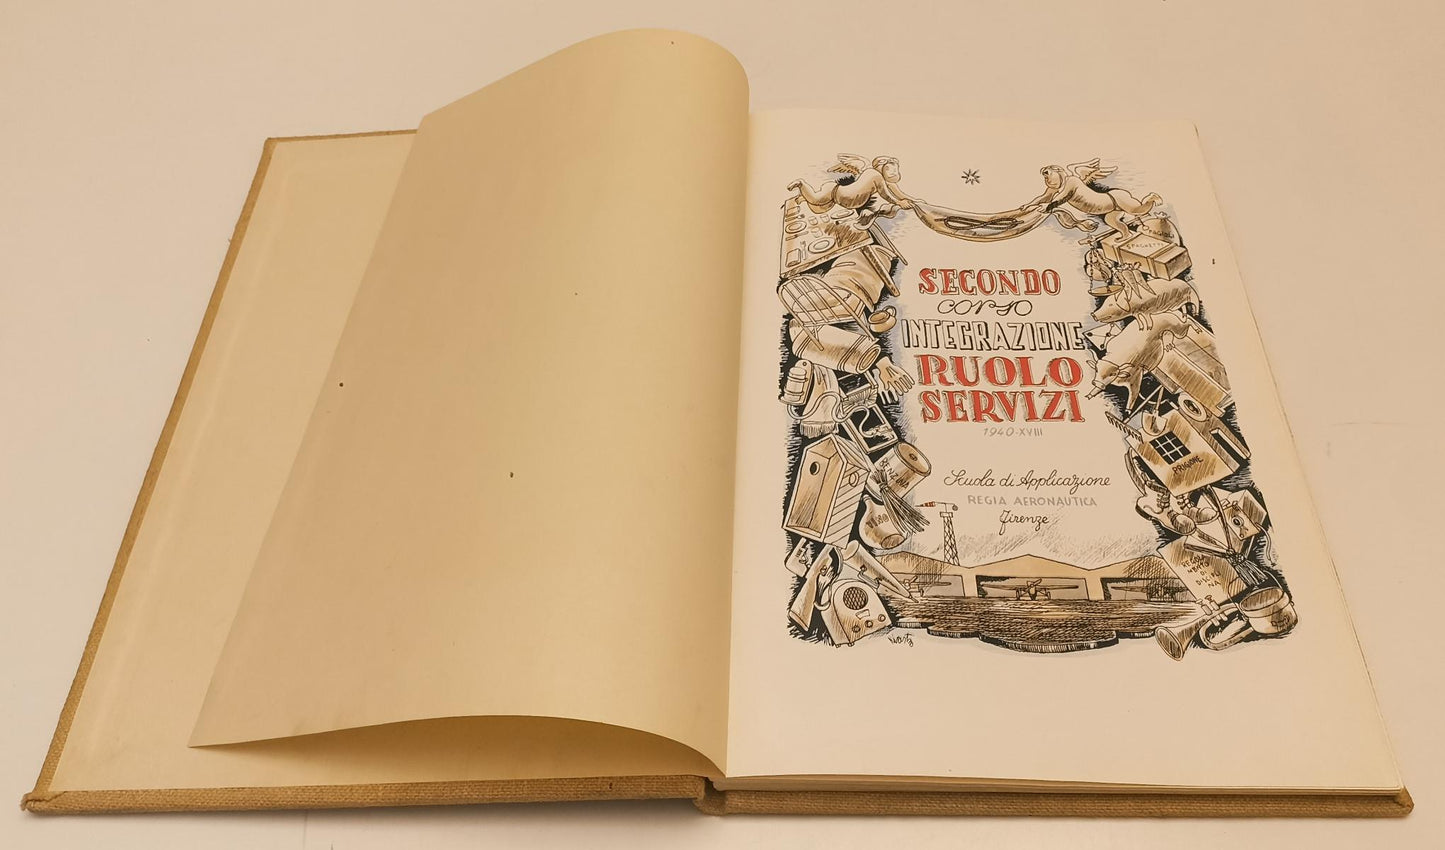 LM- SECONDO CORSO INTEGRAZIONE RUOLO SERVIZI 1940-XVIII ARMA AERONAUTICA- YFS240